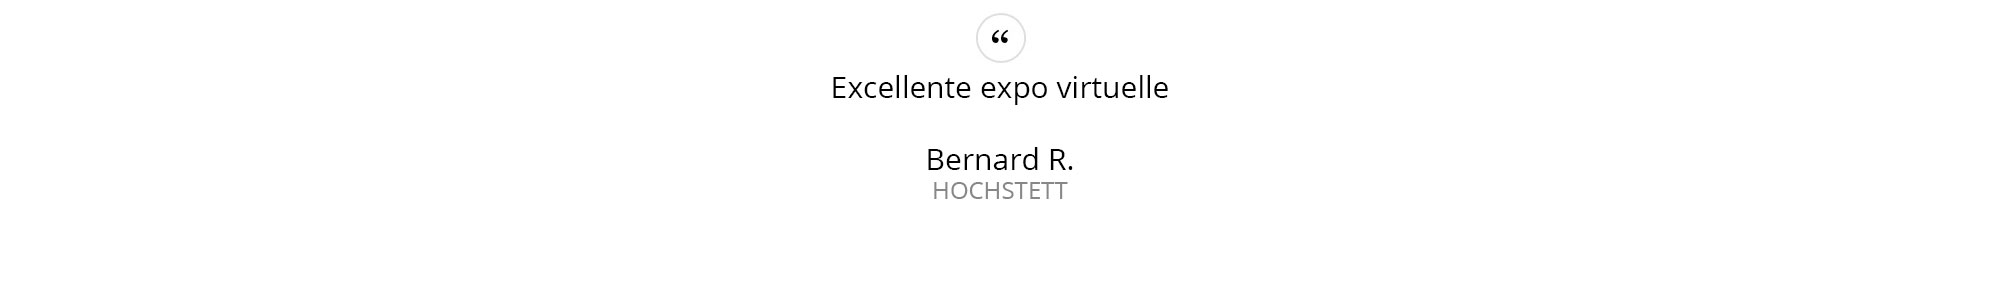 Bernard-R.---HOCHSTETT